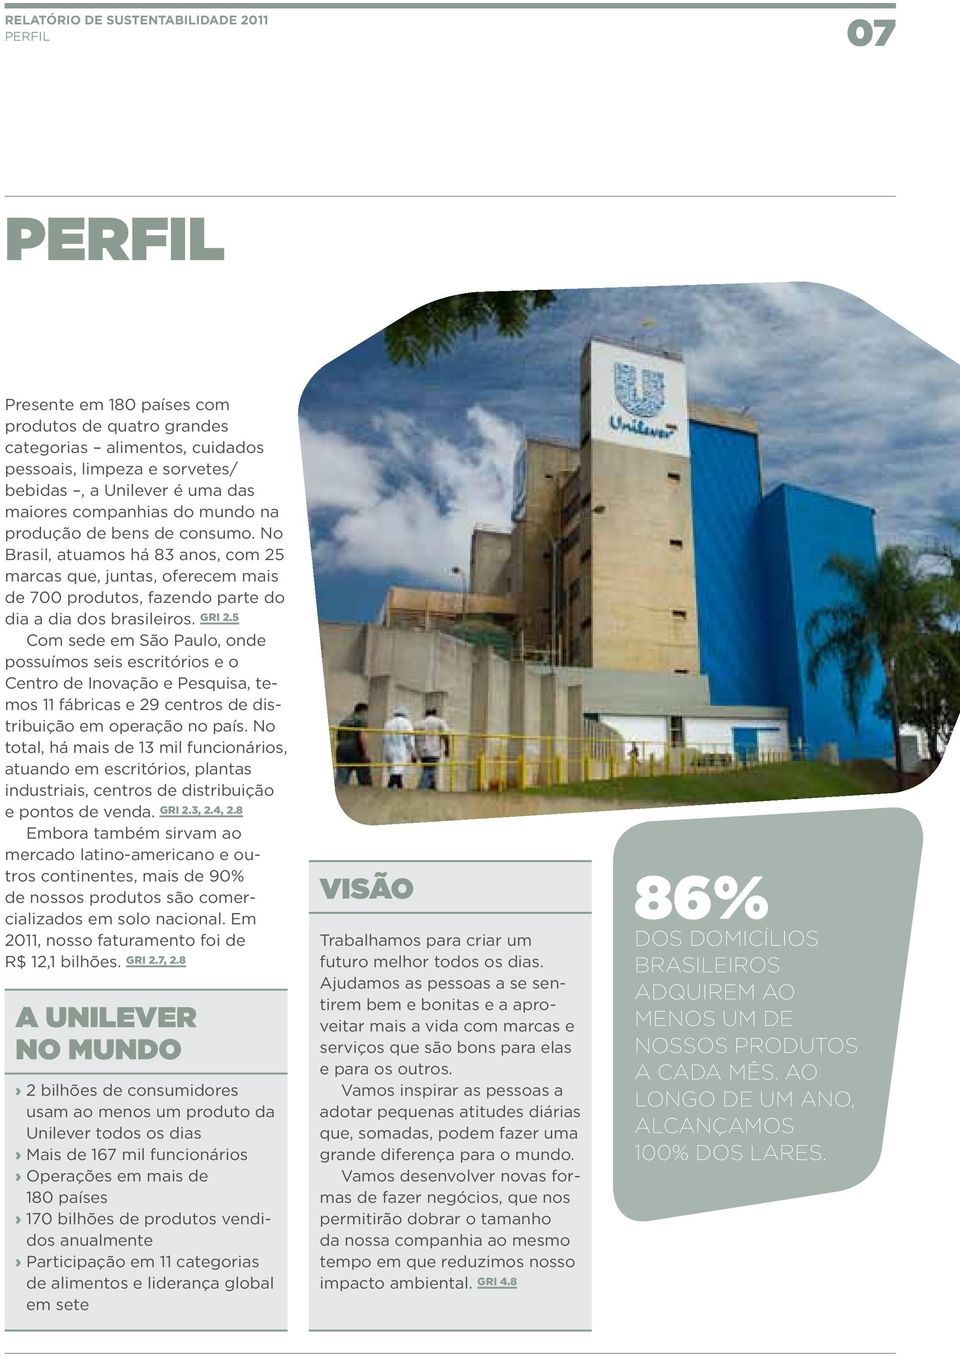 5 Com sede em São Paulo, onde possuímos seis escritórios e o Centro de Inovação e Pesquisa, temos 11 fábricas e 29 centros de distribuição em operação no país.